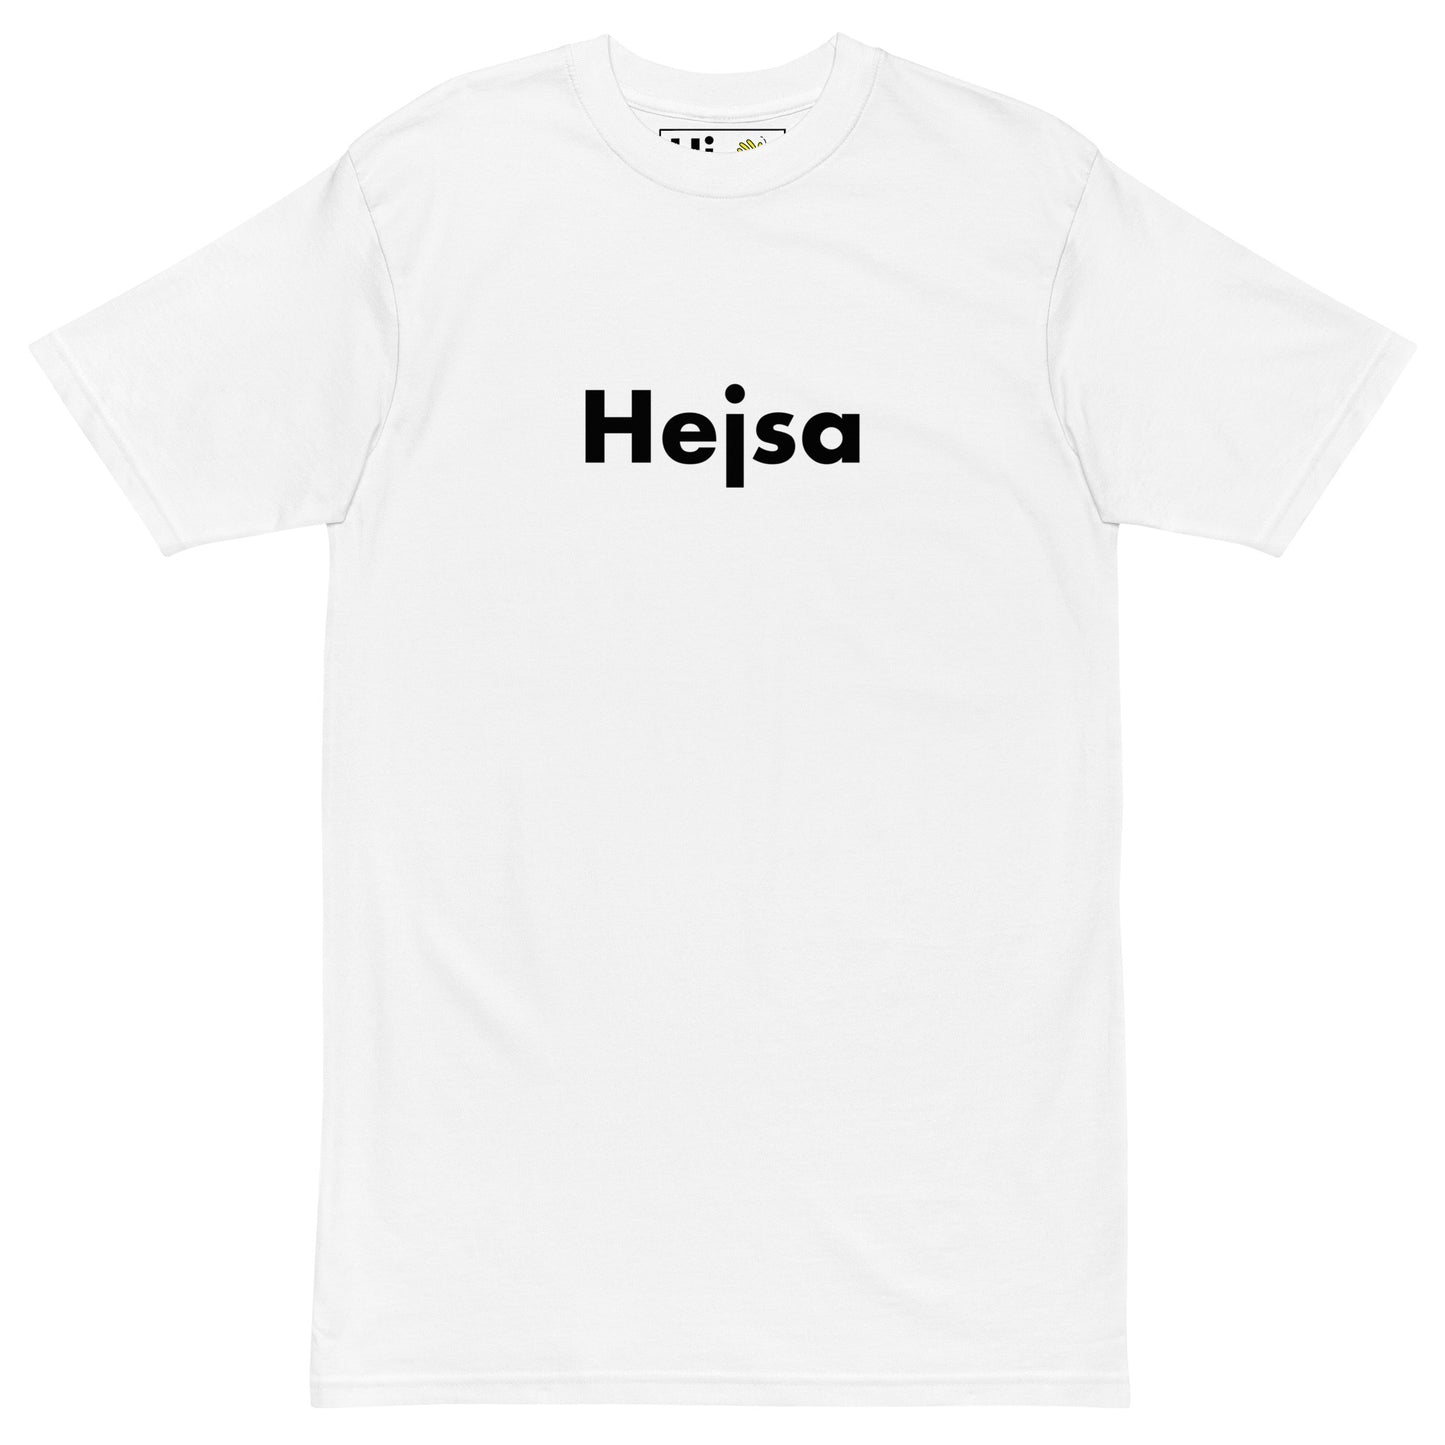 Hi Hejsa Danish